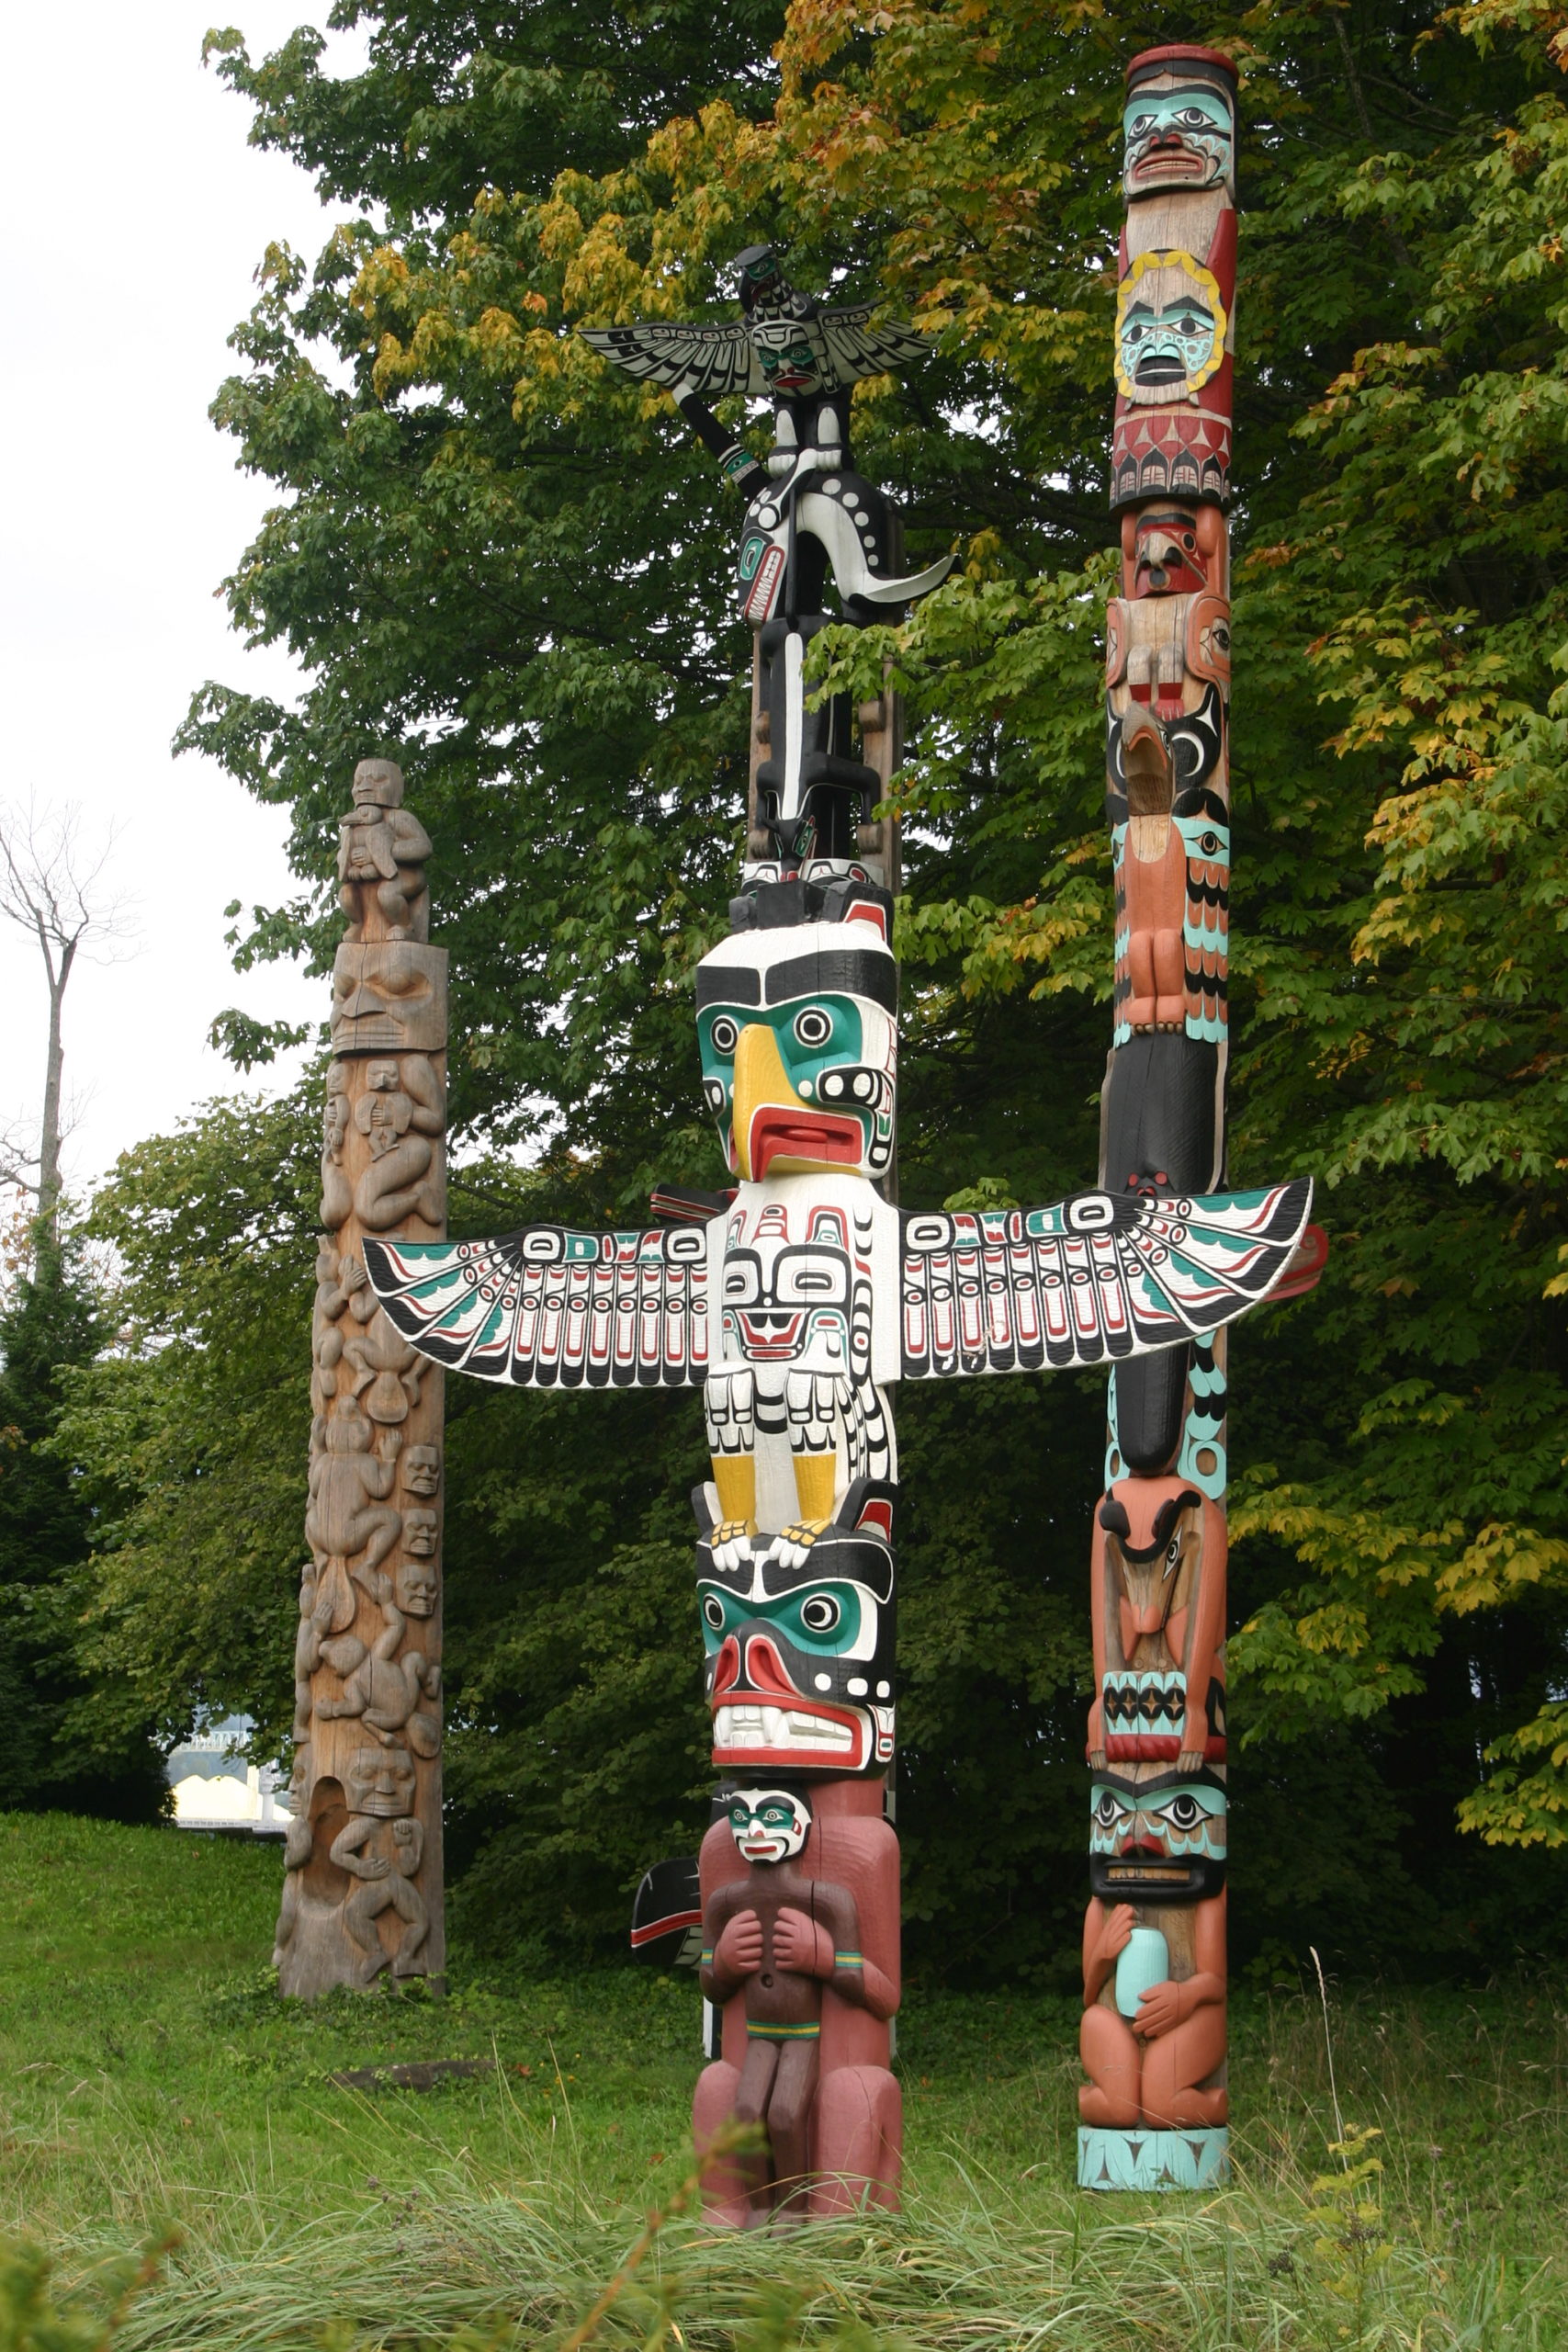 Totem poles Stanley Park Vancouver